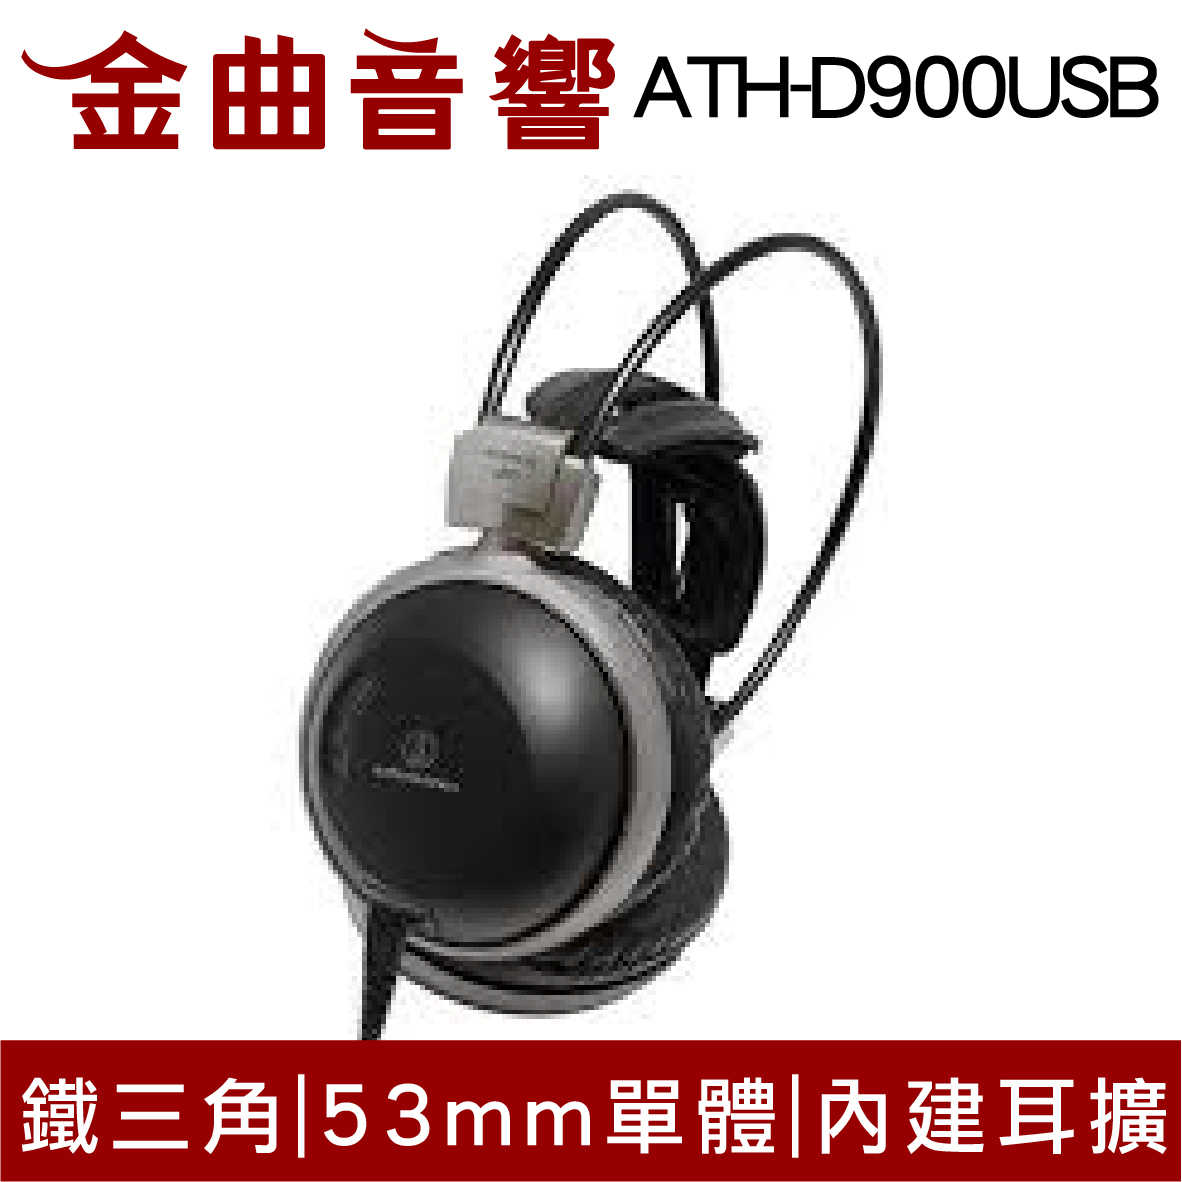 【福利機Ａ組】鐵三角 ATH-D900USB 內建24bit/192kHz DAC 耳罩式耳機 | 金曲音響